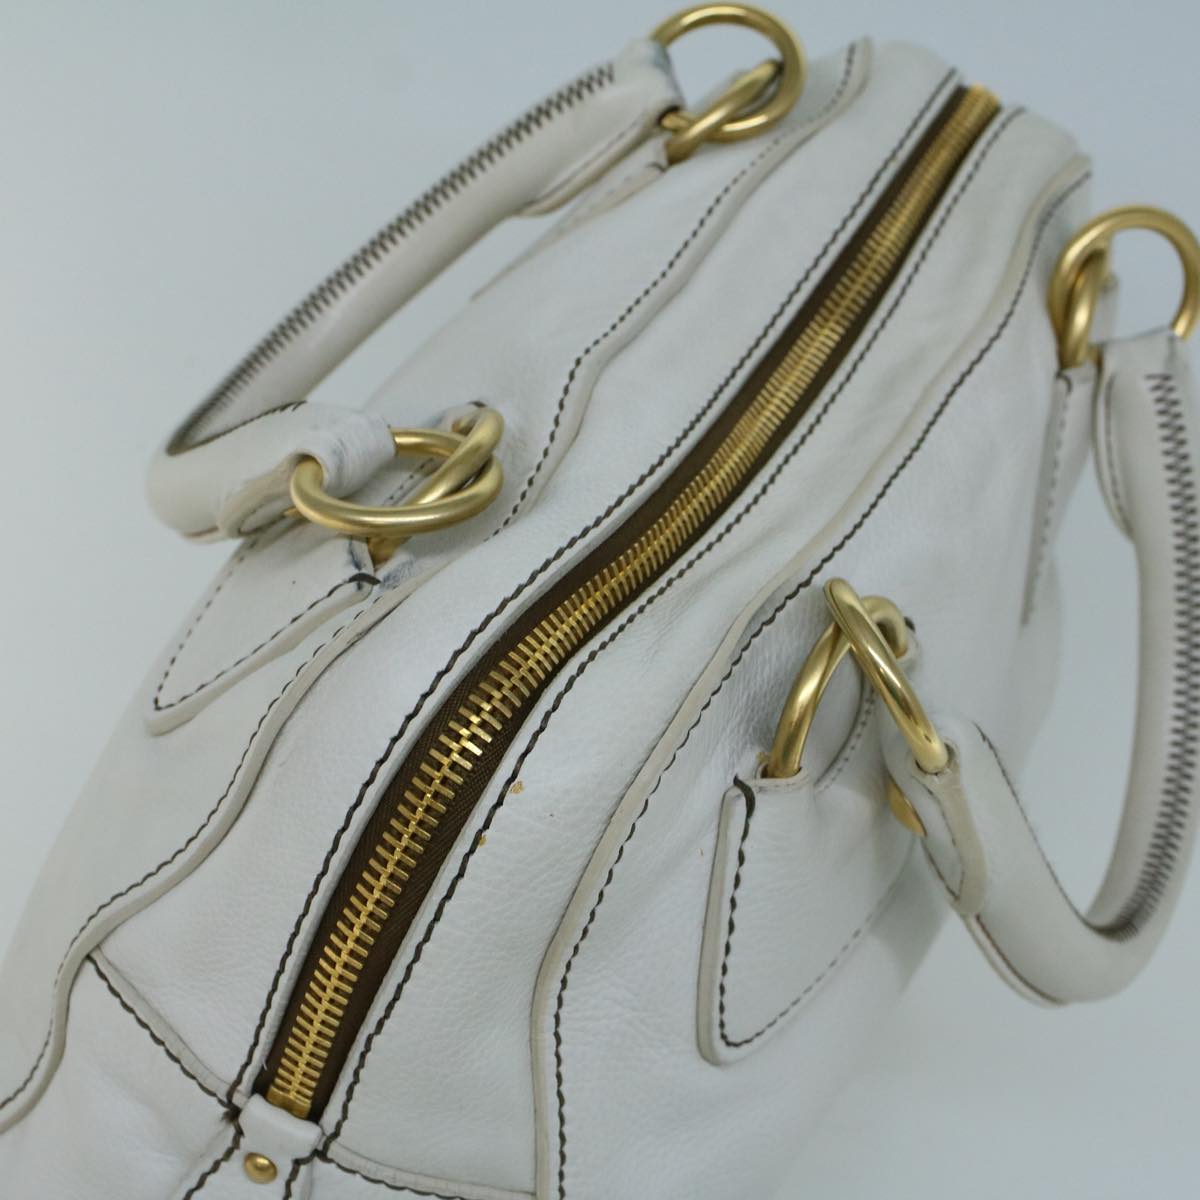 Miu Miu Hand Bag Leather White Auth bs9198